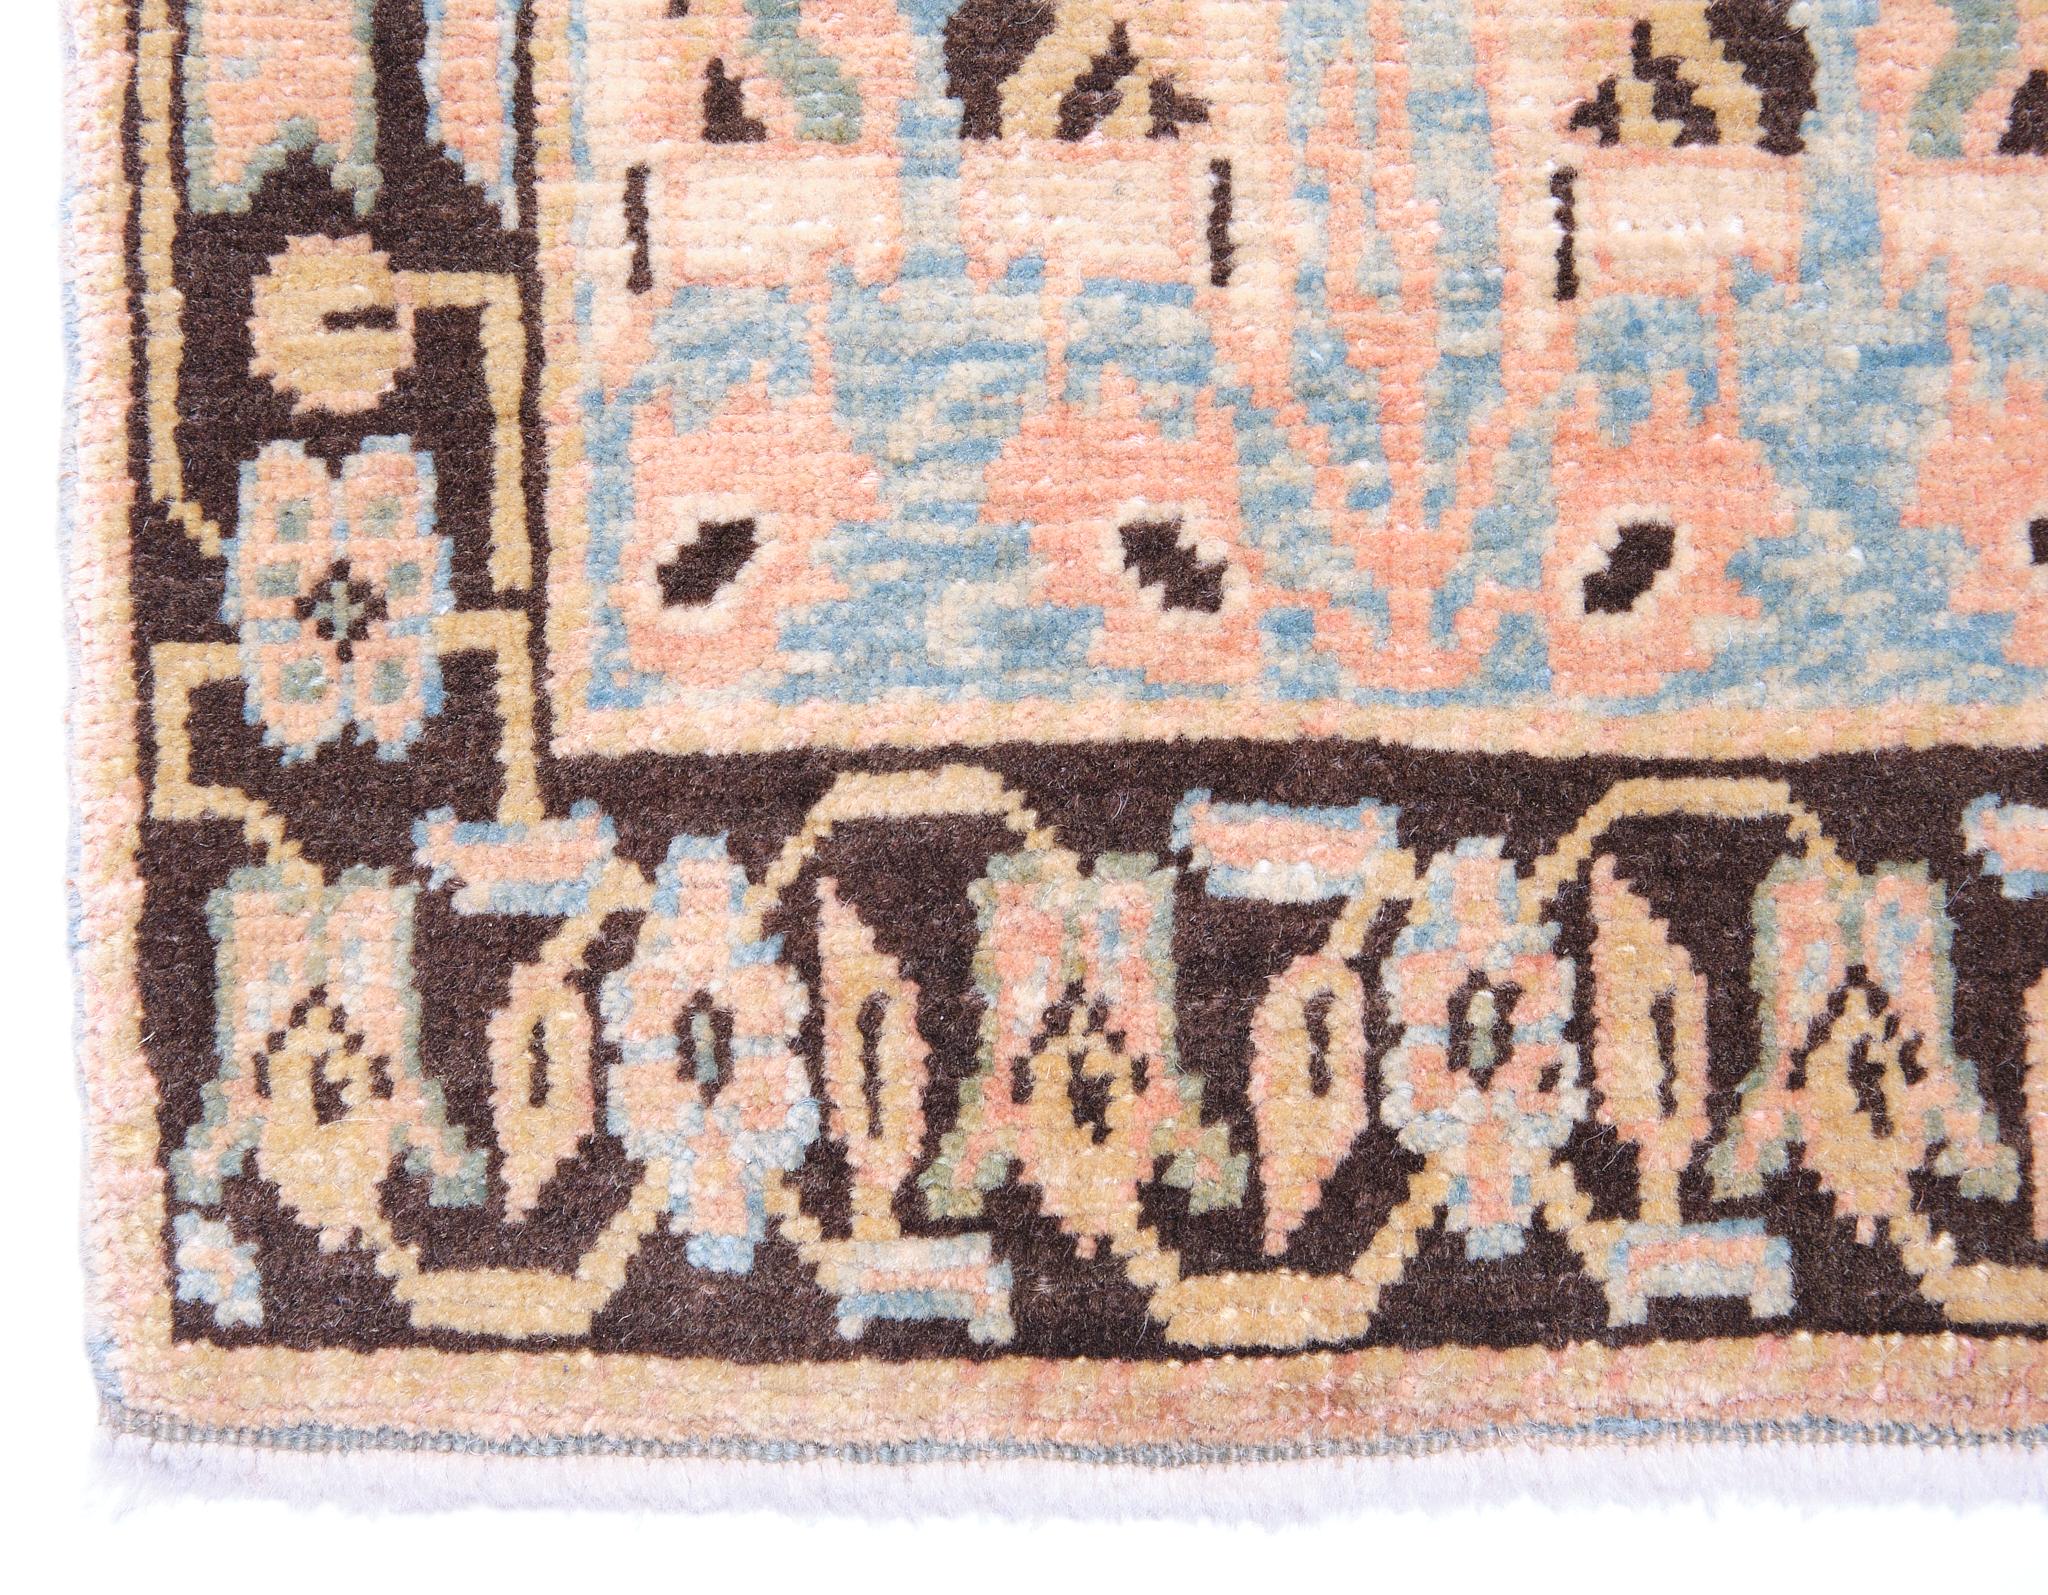 Die Quelle des Teppichs stammt aus dem Buch Antique Rugs of Kurdistan A Historical Legacy of Woven Art, James D. Burns, 2002 nr.28. Dies ist ein exklusives Beispiel für einen Teppich mit versetzten Blumenreihen aus dem 18. Jahrhundert aus Senna in